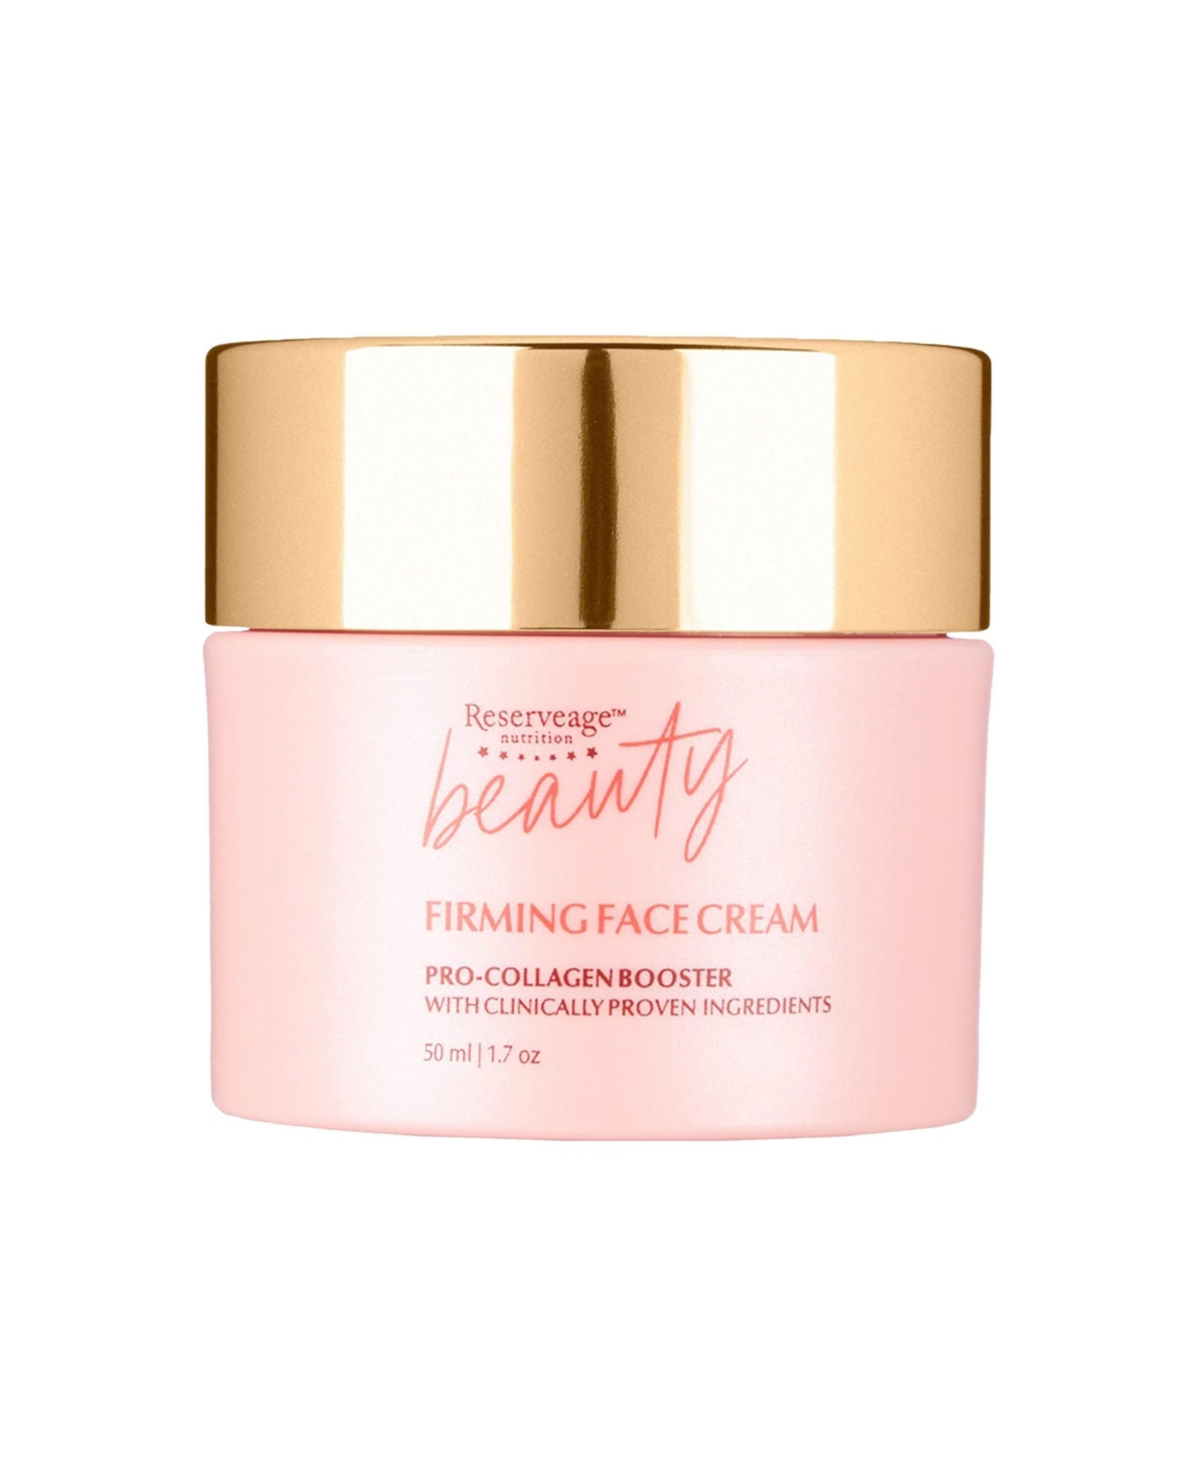 Beauty, Firming Face Cream, 1.7 oz